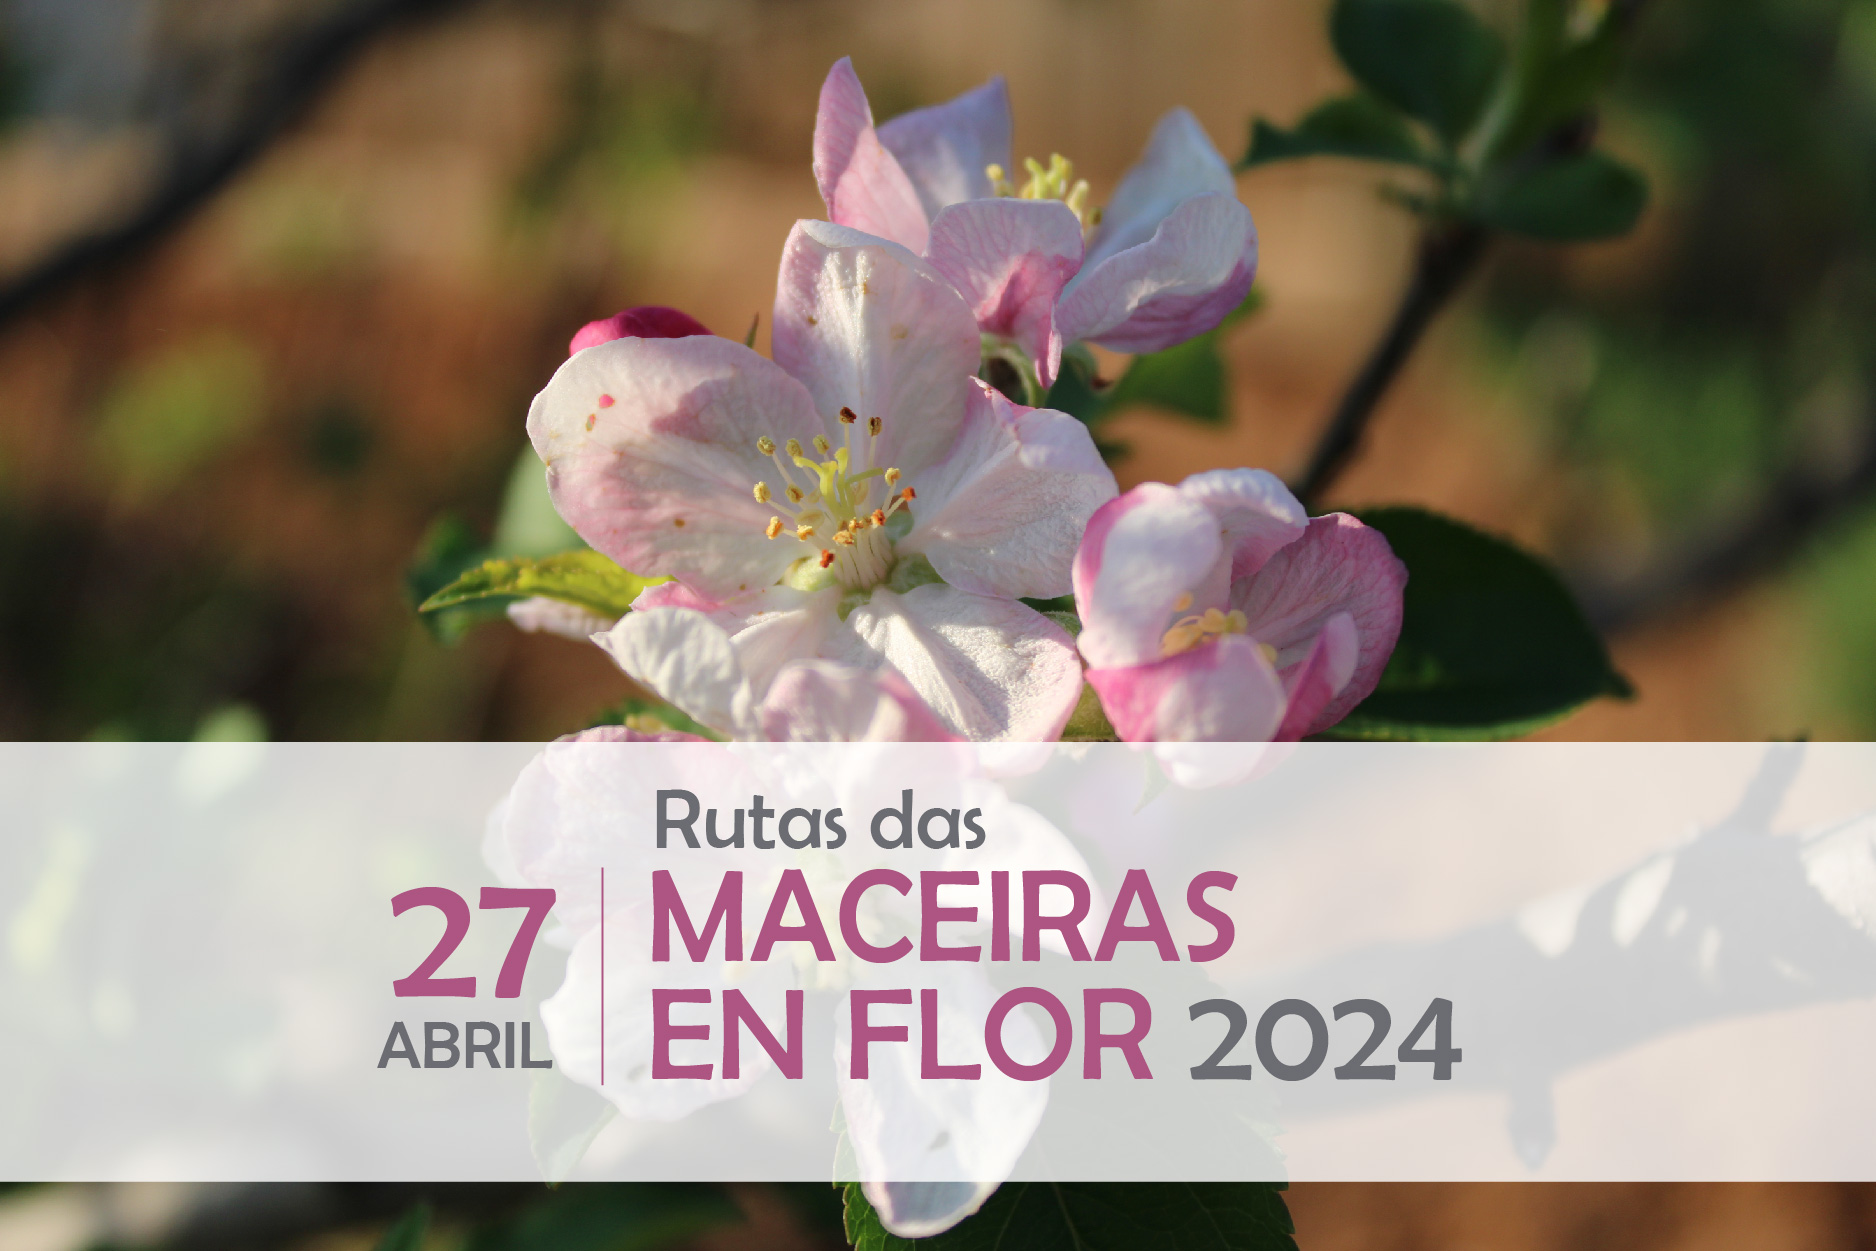 Inscrición para participar nas Rutas das Maceiras en Flor 2024